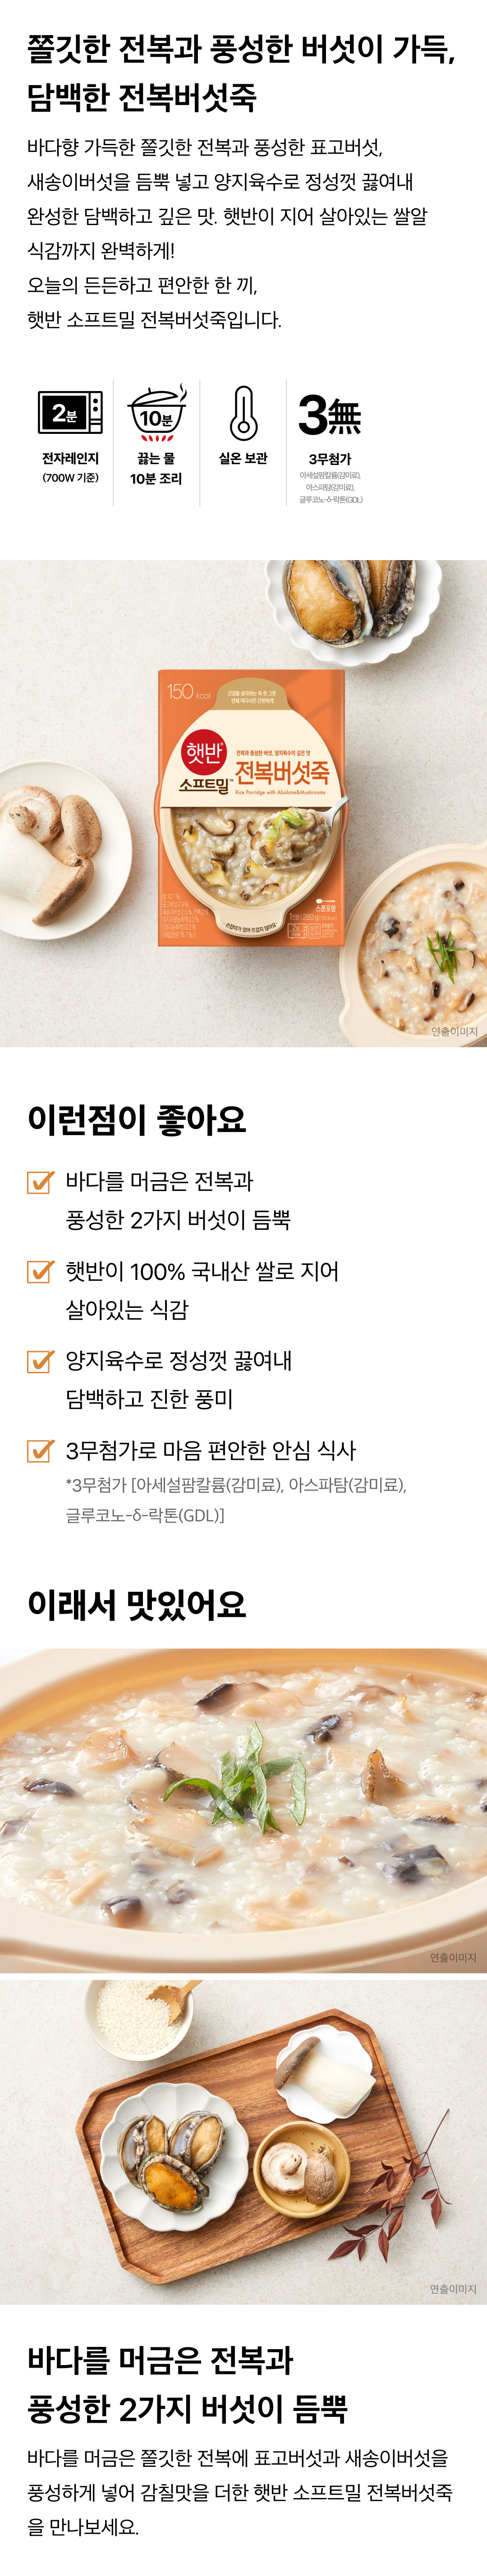 햇반소프트밀-전복버섯죽-280g-1000140151852